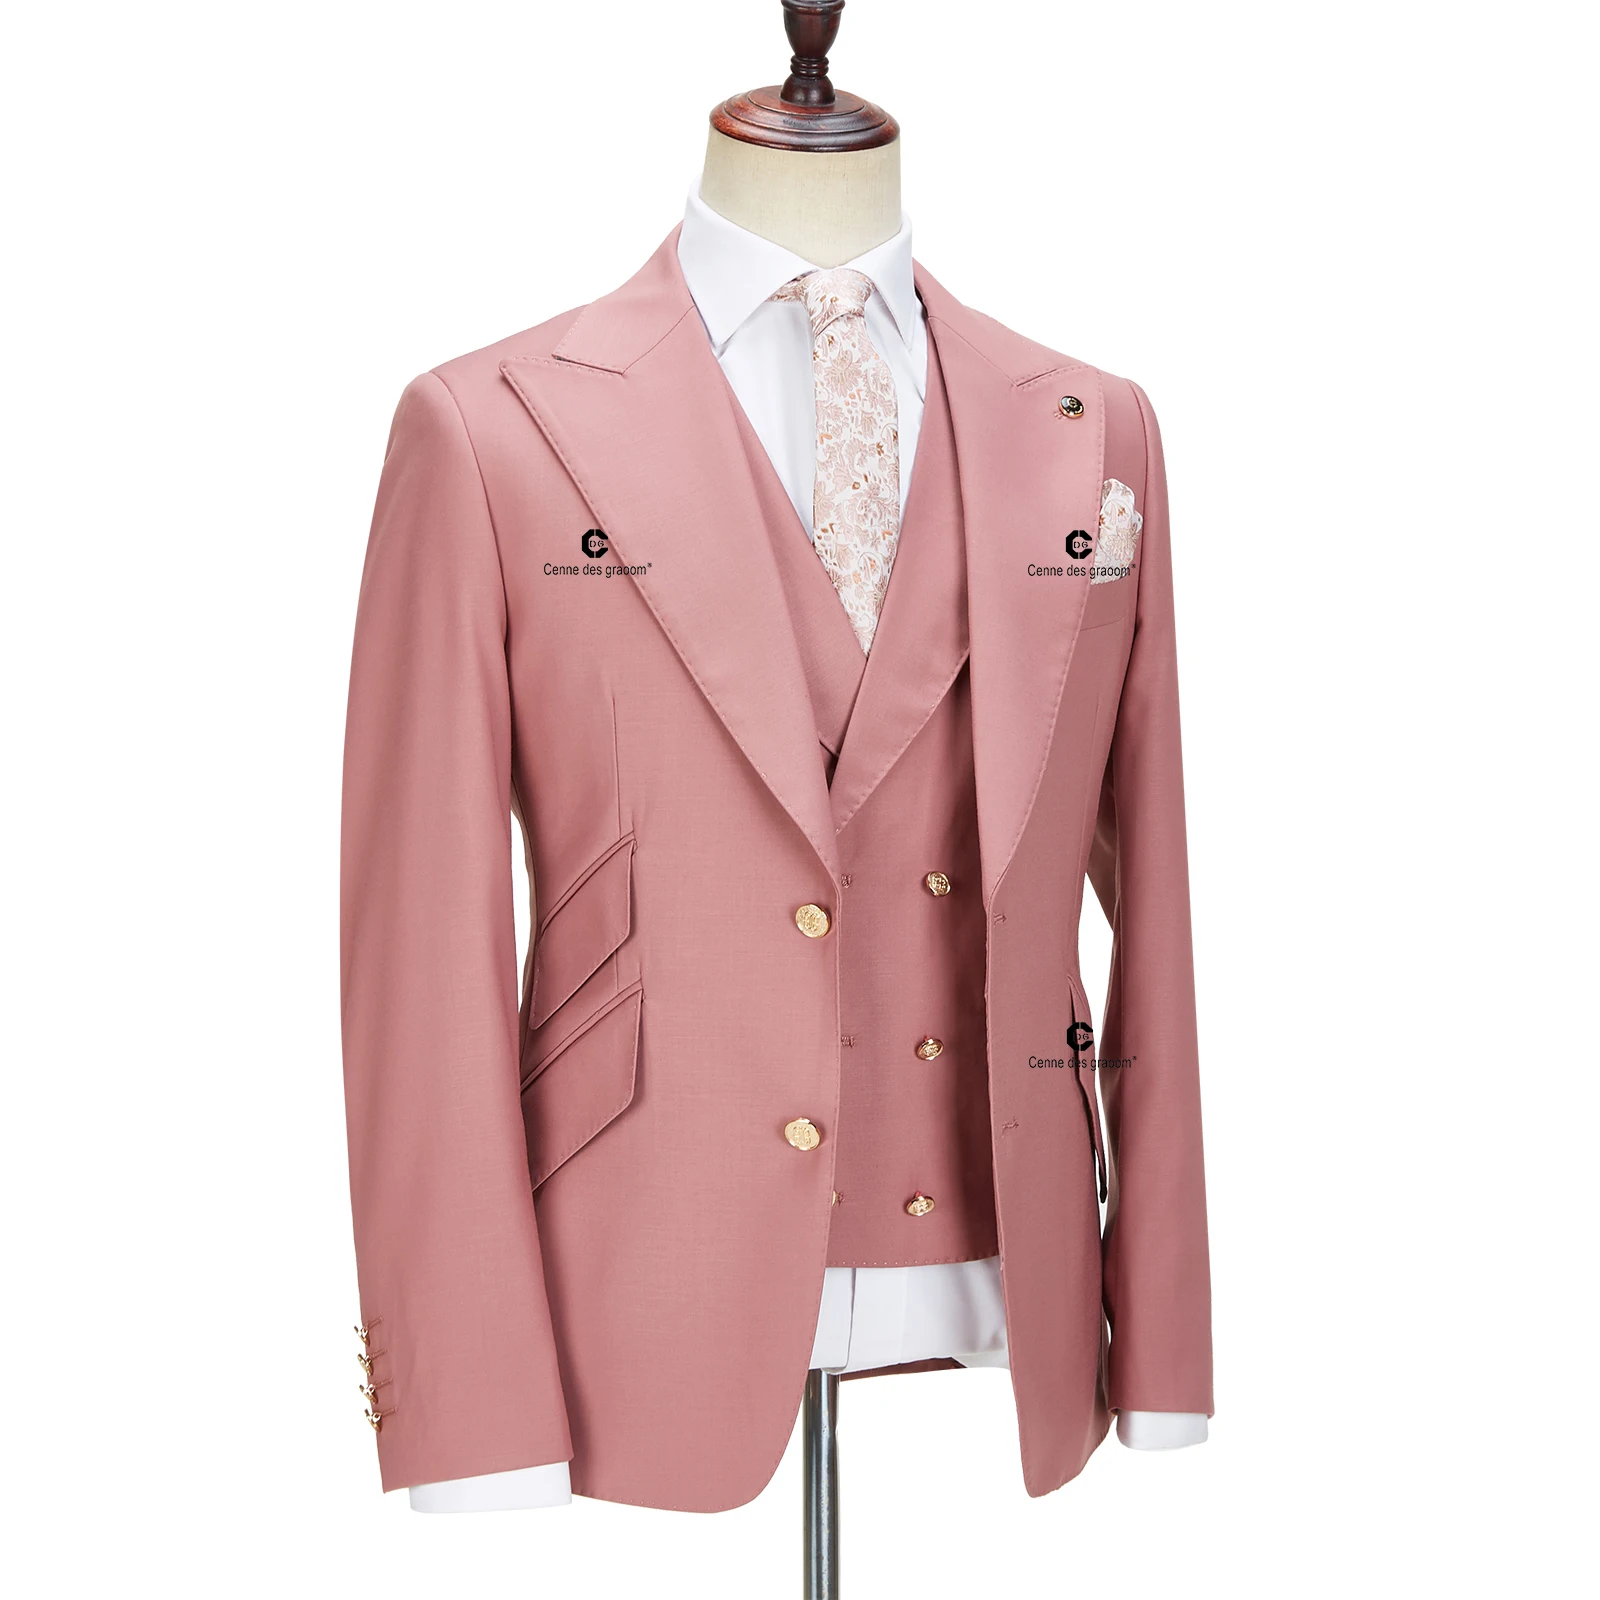 Cenne Des Graoom New Men Suits Slim Fit 3 pezzi Set Gold Button Solid Jacket Vest Pants abito elegante da sposa formale Casual 999